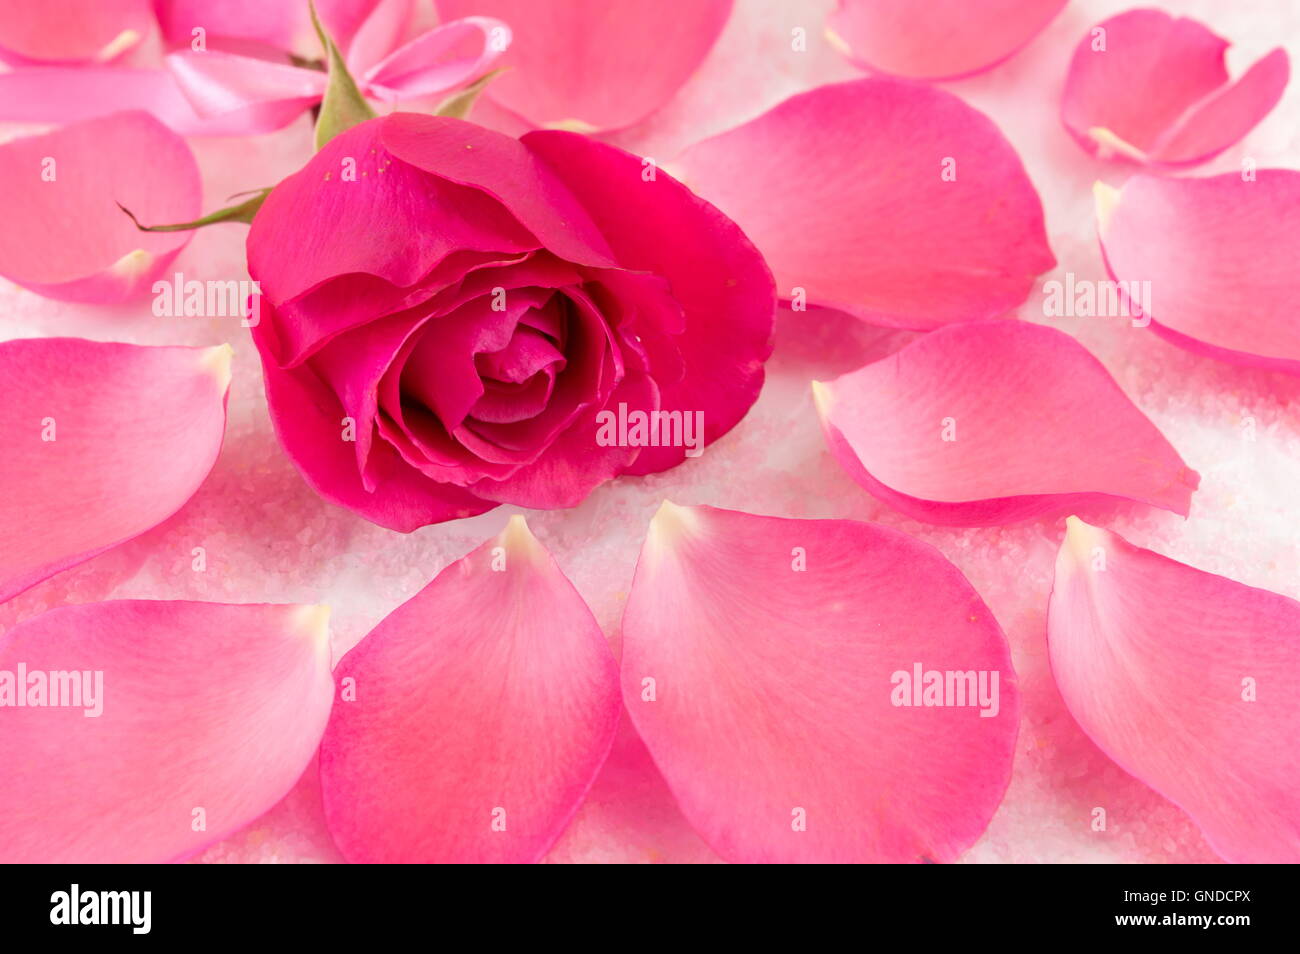 Rosa Rosa en pétalos de rosa y granos de sal de baño Foto de stock